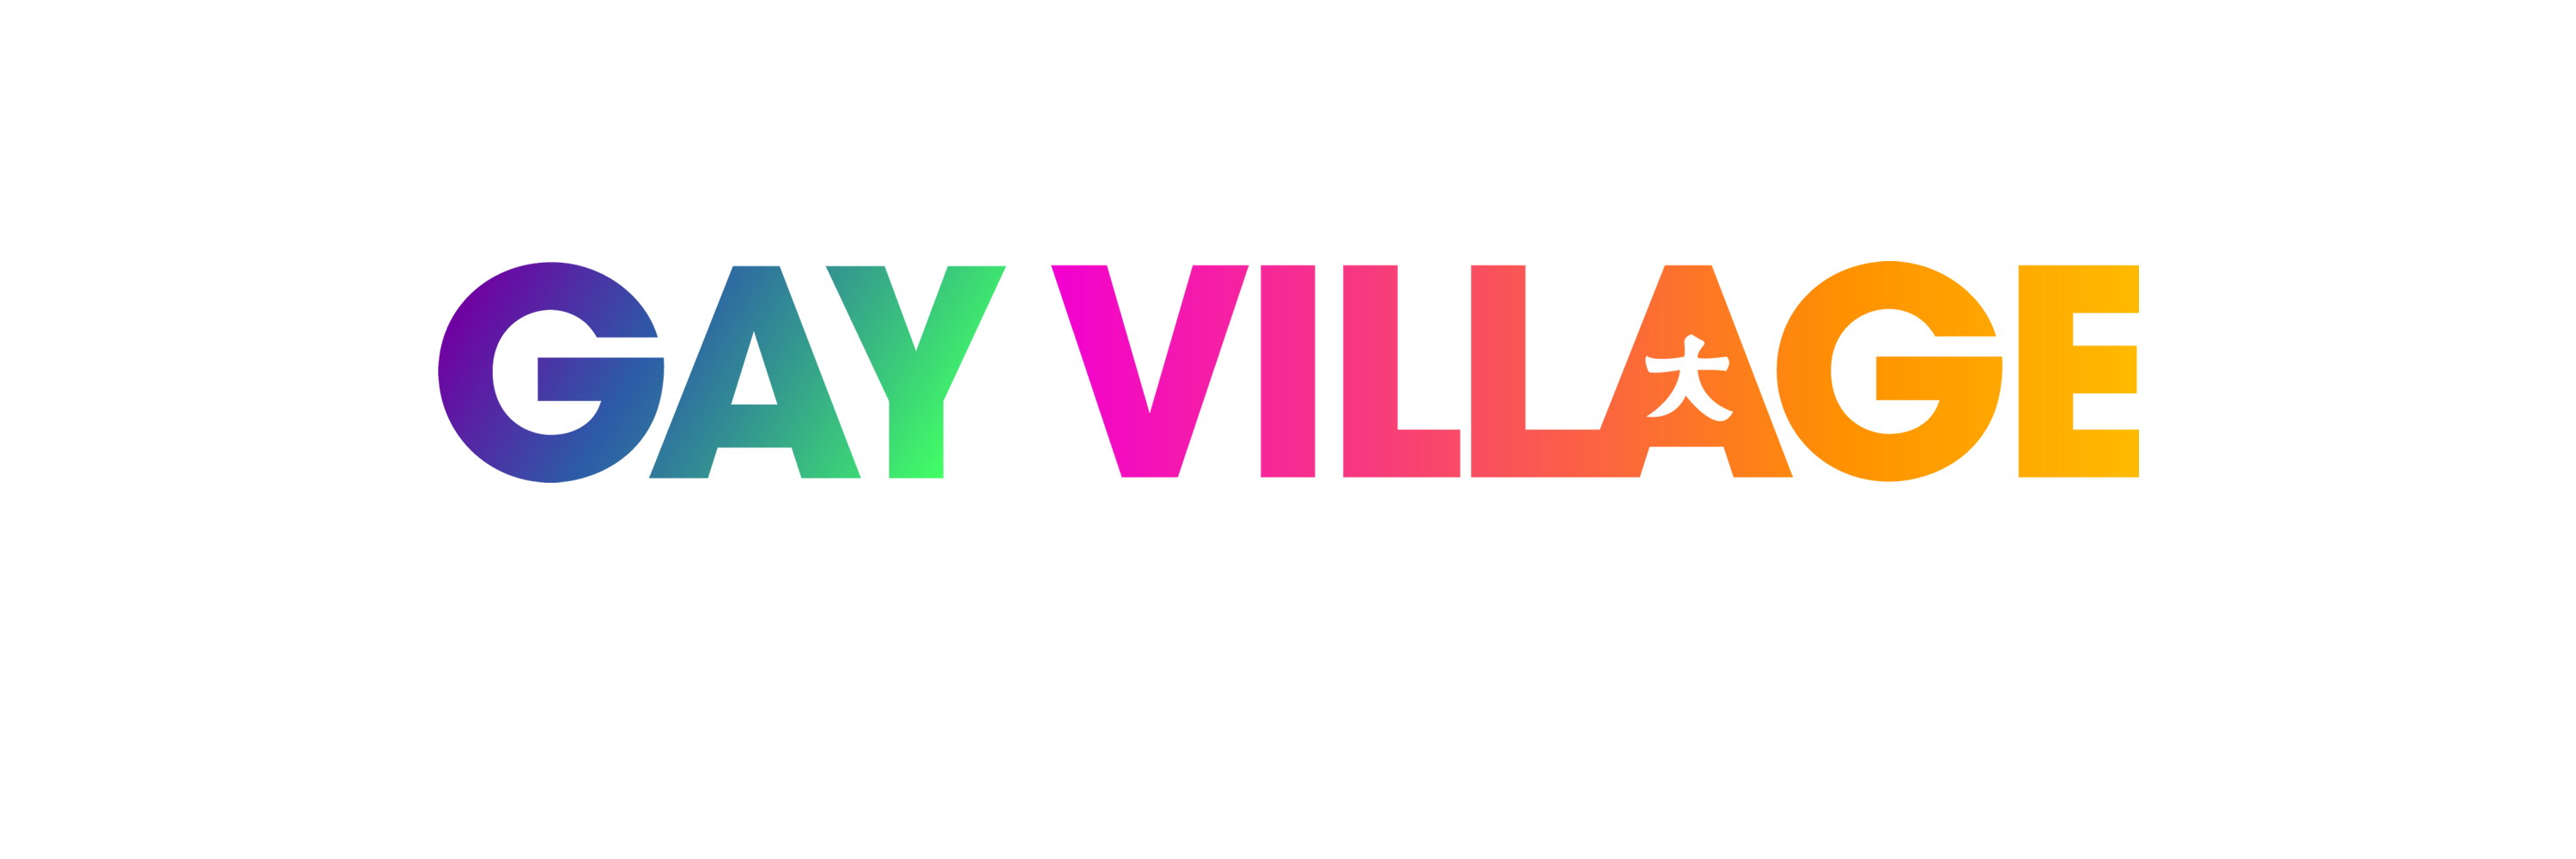 gay village